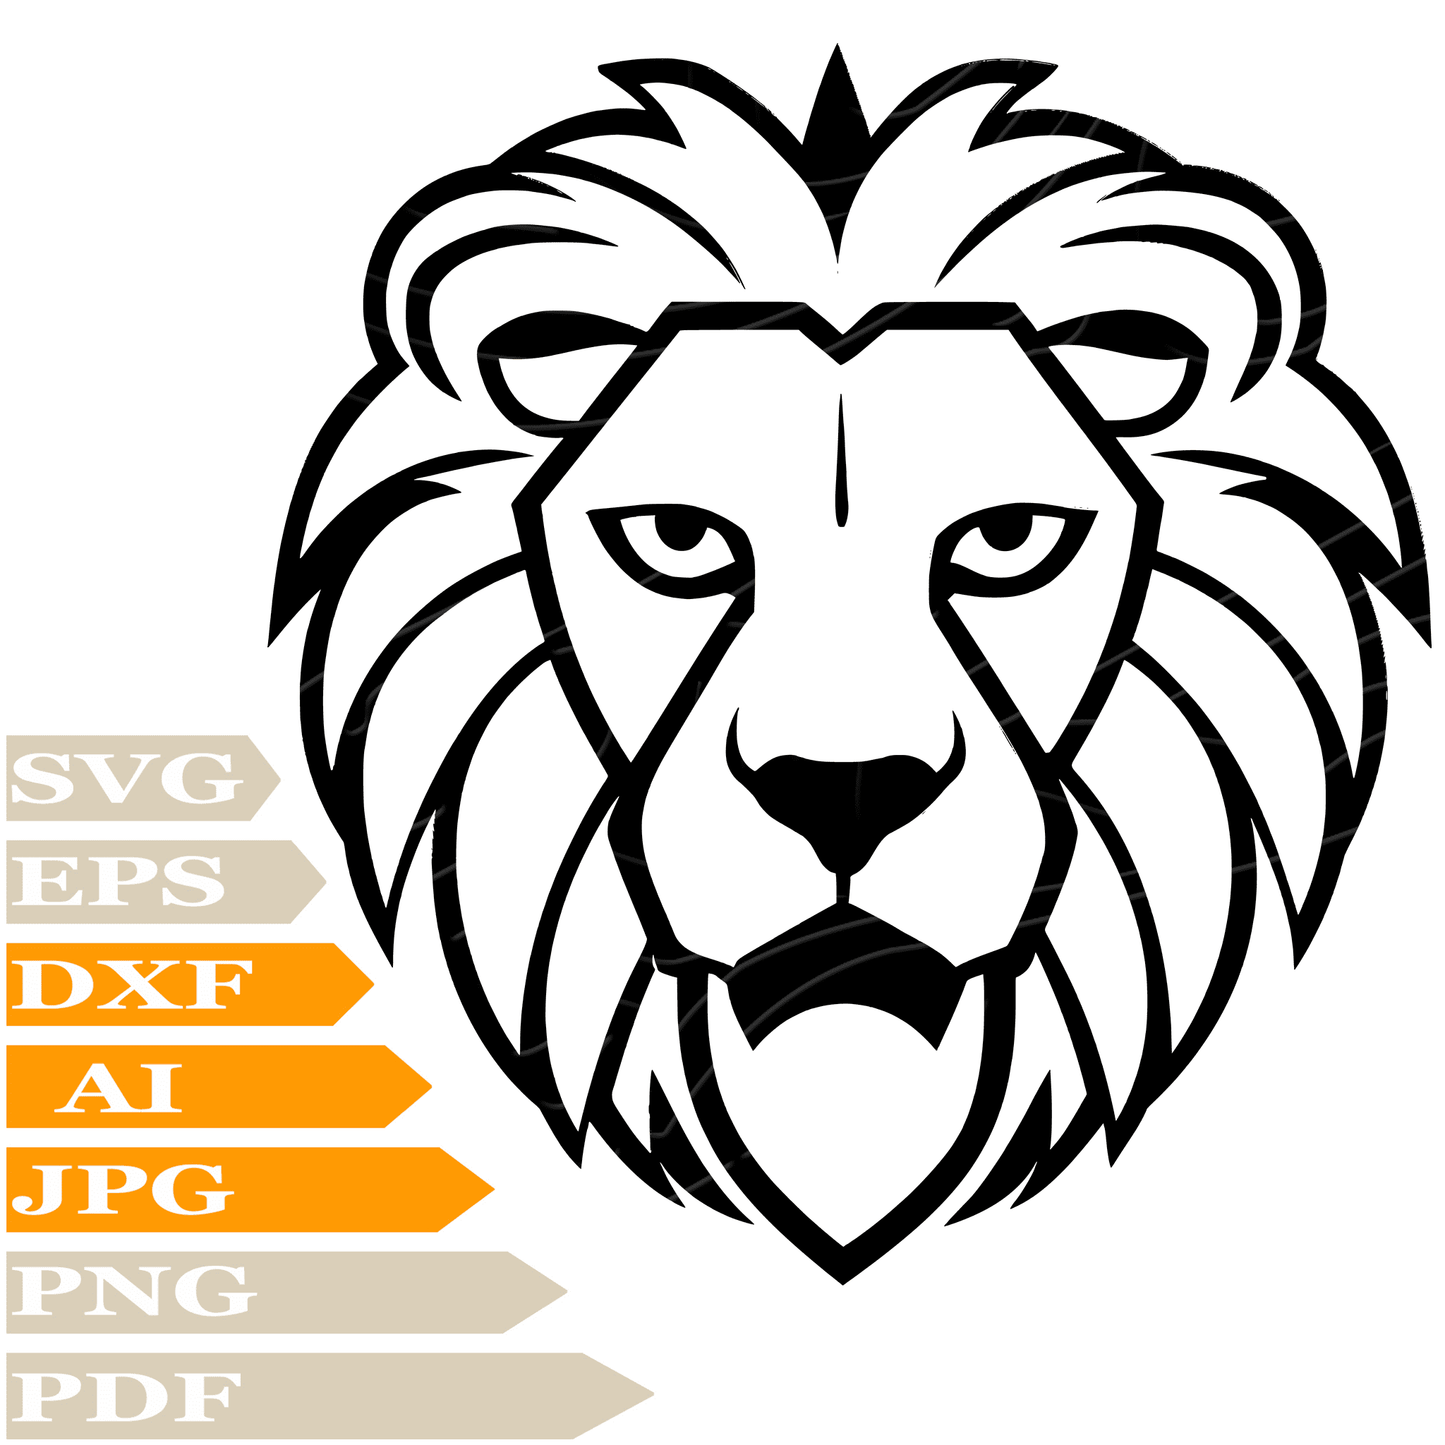 Lion SVG File, Lion Head SVG Design, Lion Face SVG, King Lion Vector Graphics, Lion Head PNG, Image Cut, For Cricut, Clipart, Cut File, Print, T-Shirt, Silhouette